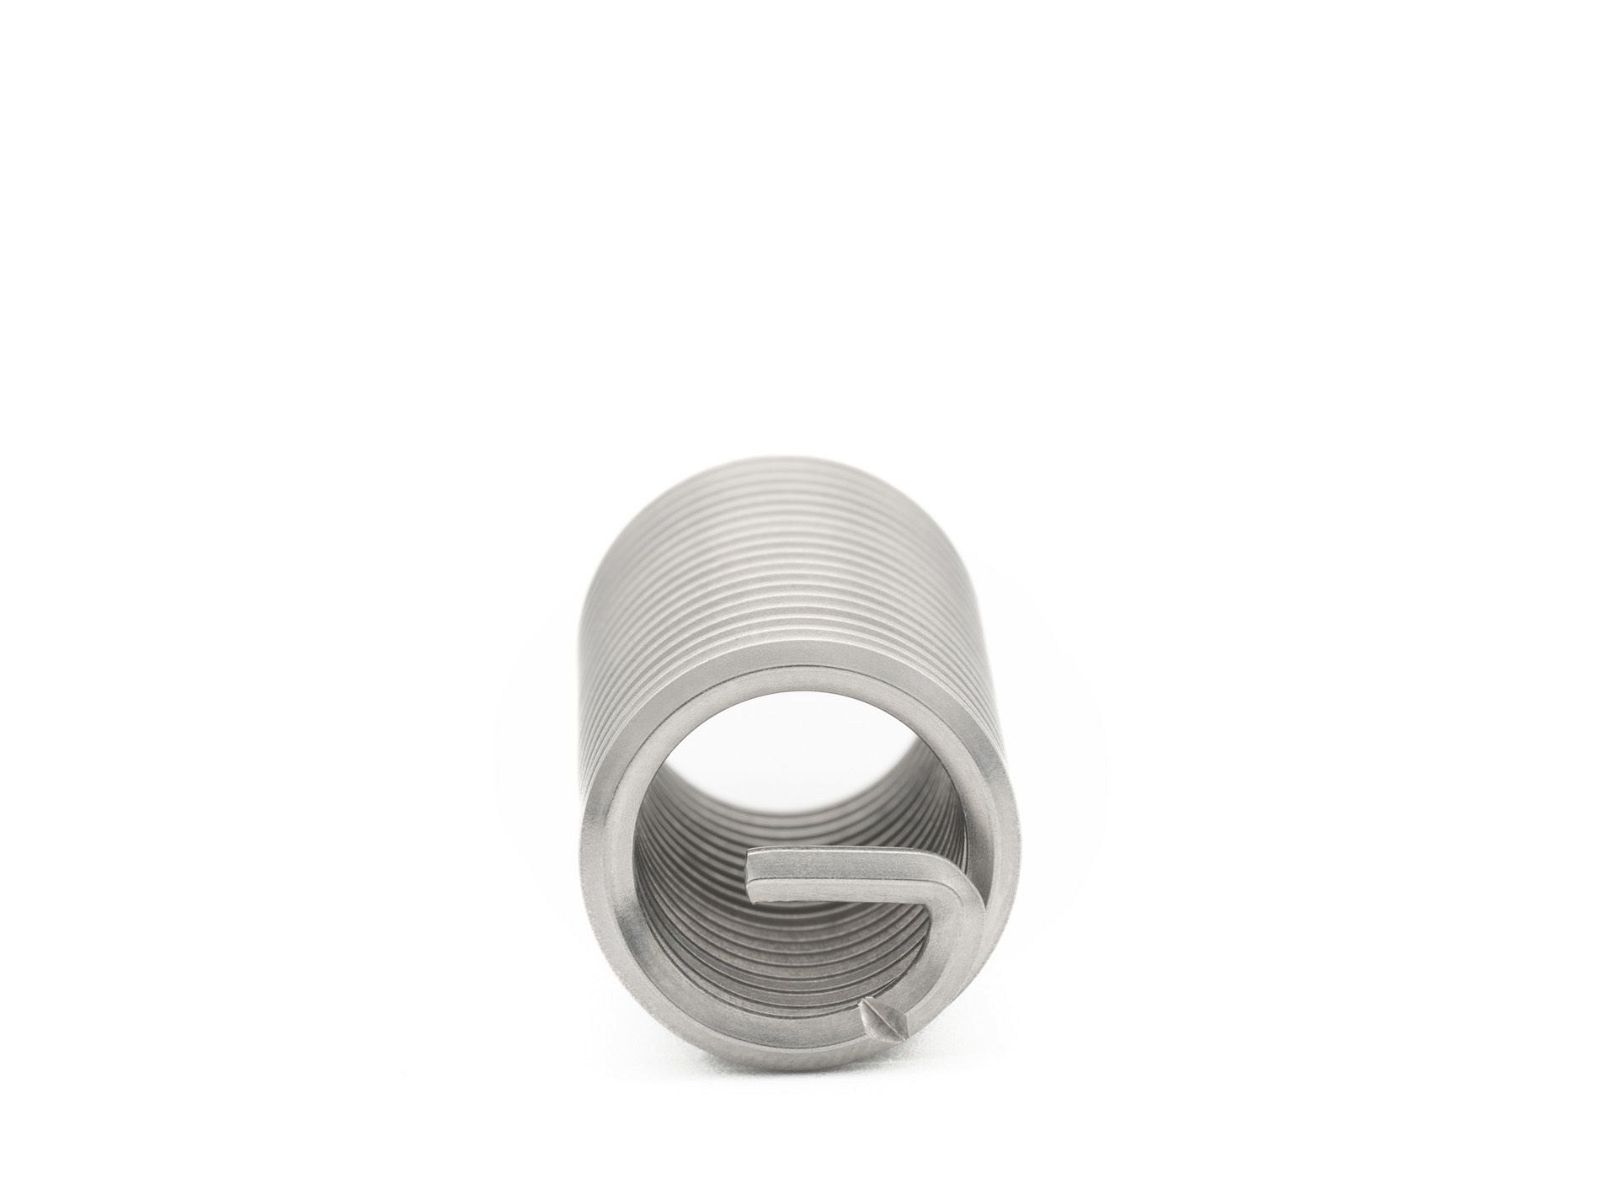 BaerCoil Wire Thread Inserts UNF 9/16 x 18 - 3.0 D (42.86 mm) - free running - 50 pcs.